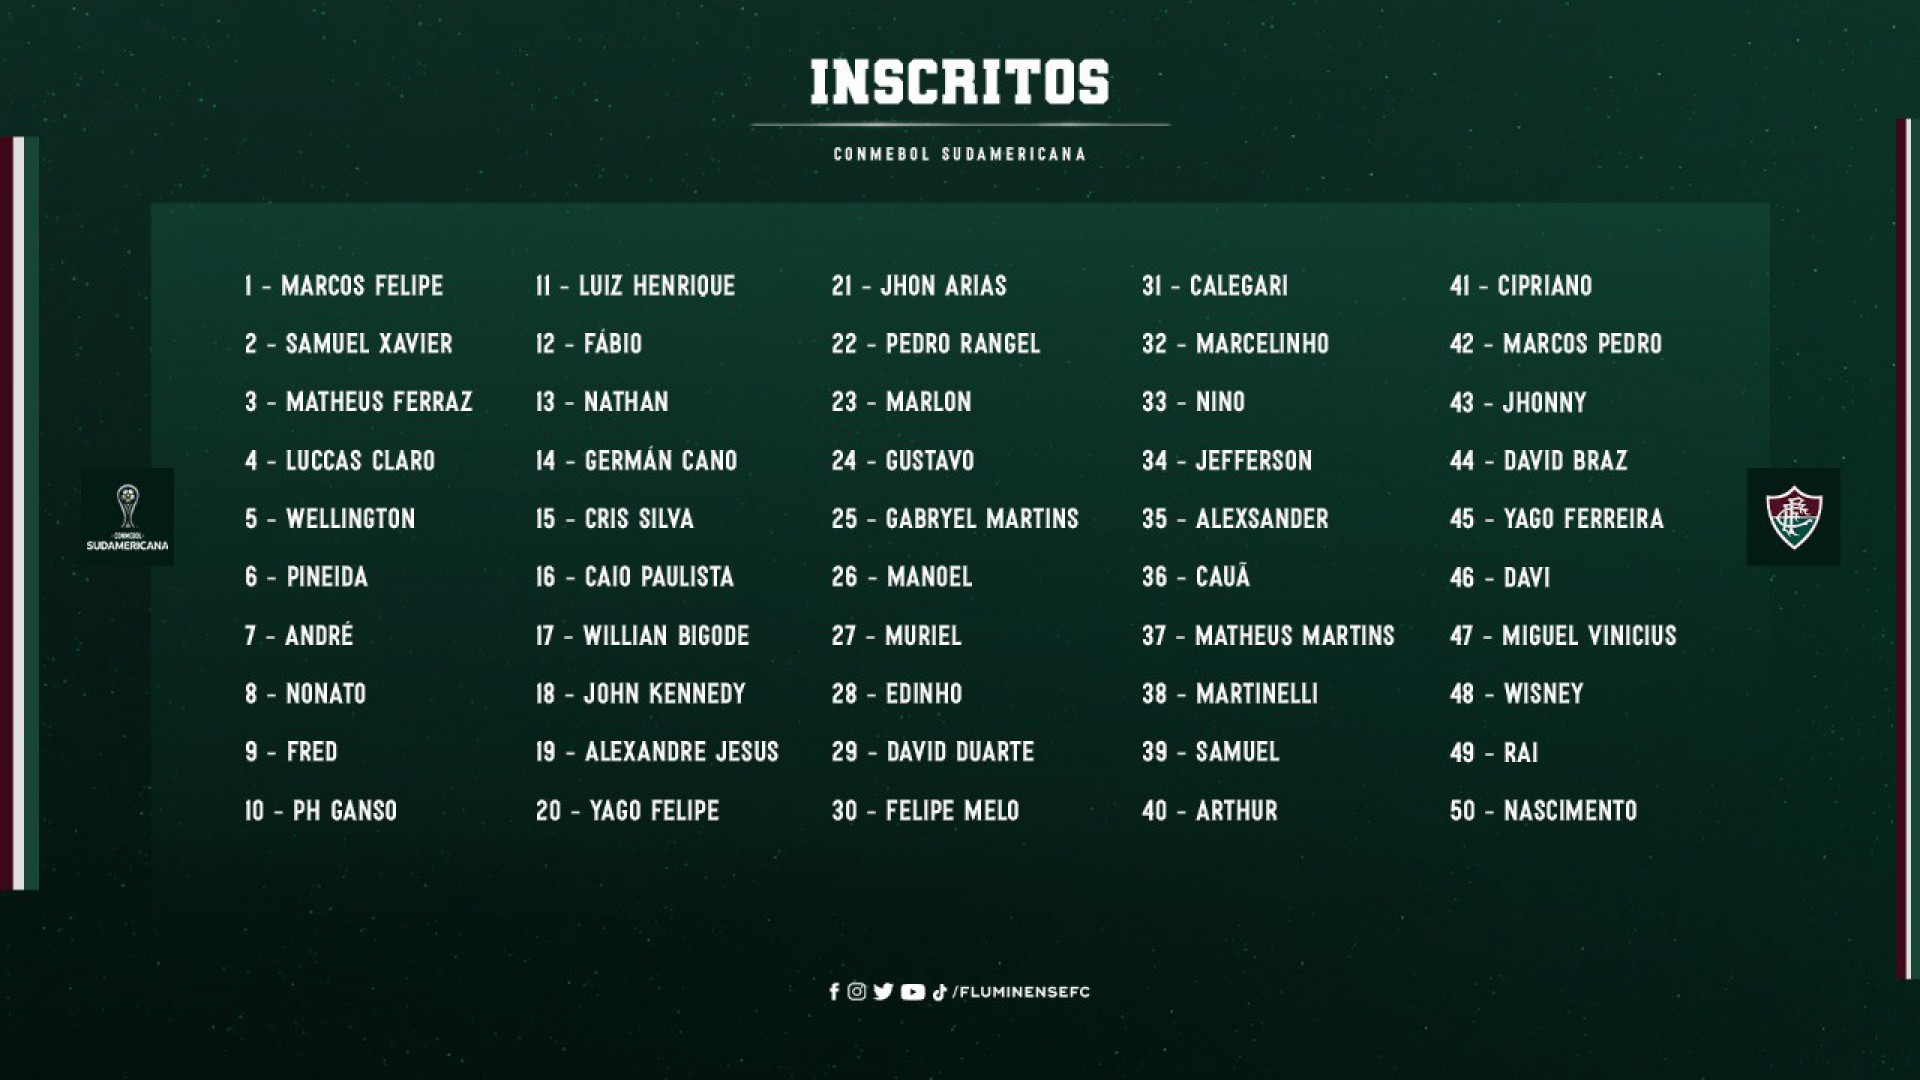 Fluminense divulga lista de inscritos para a Copa Sul-Americana - Foto: Divulgação/Fluminense FC